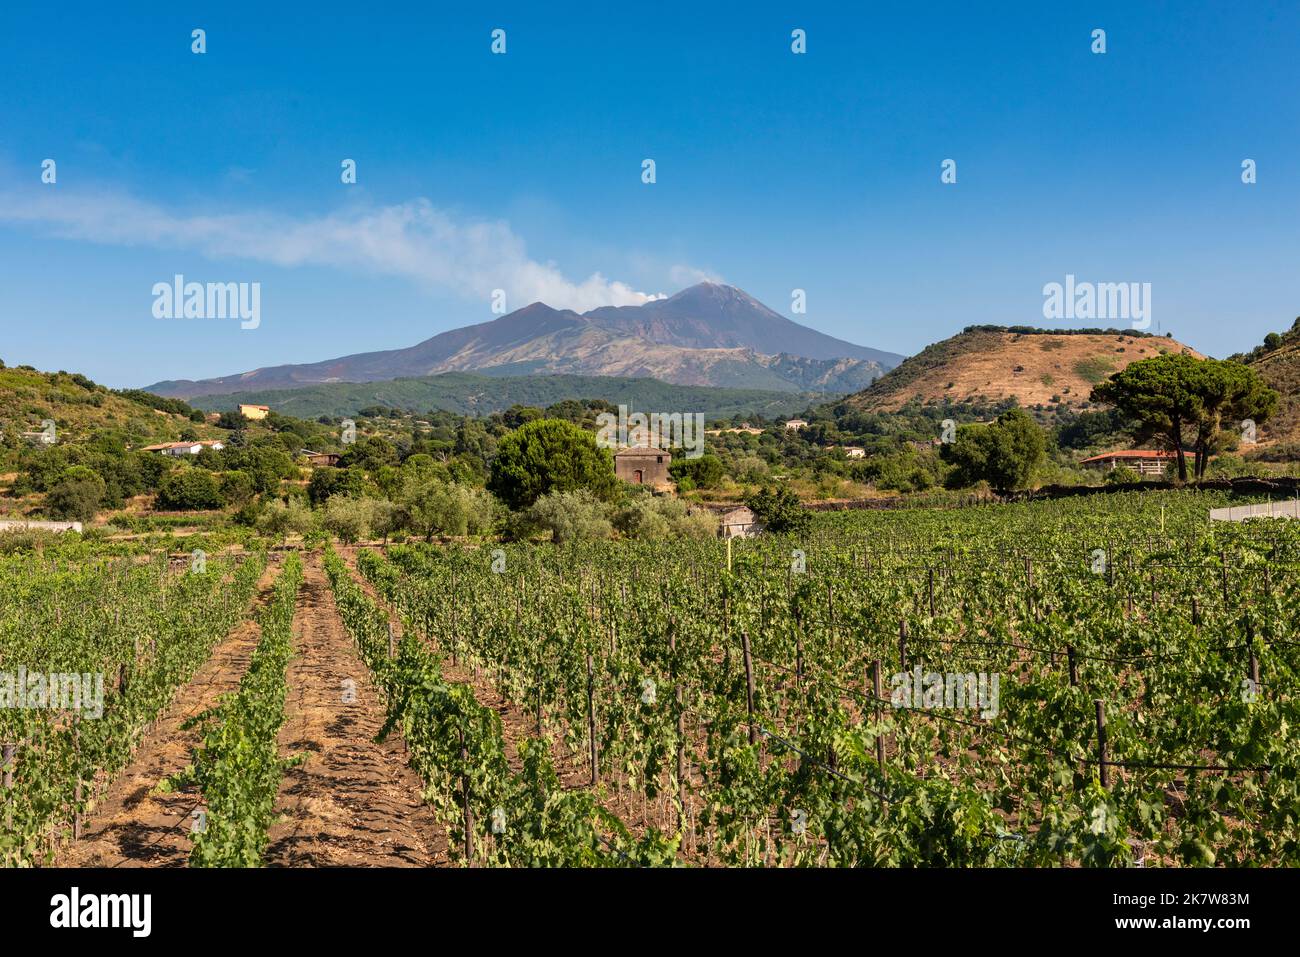 Ein Blick auf den Ätna, Sizilien, über einen Weinberg gesehen. Sizilianische Weine aus dieser Region erfreuen sich zunehmender Beliebtheit Stockfoto